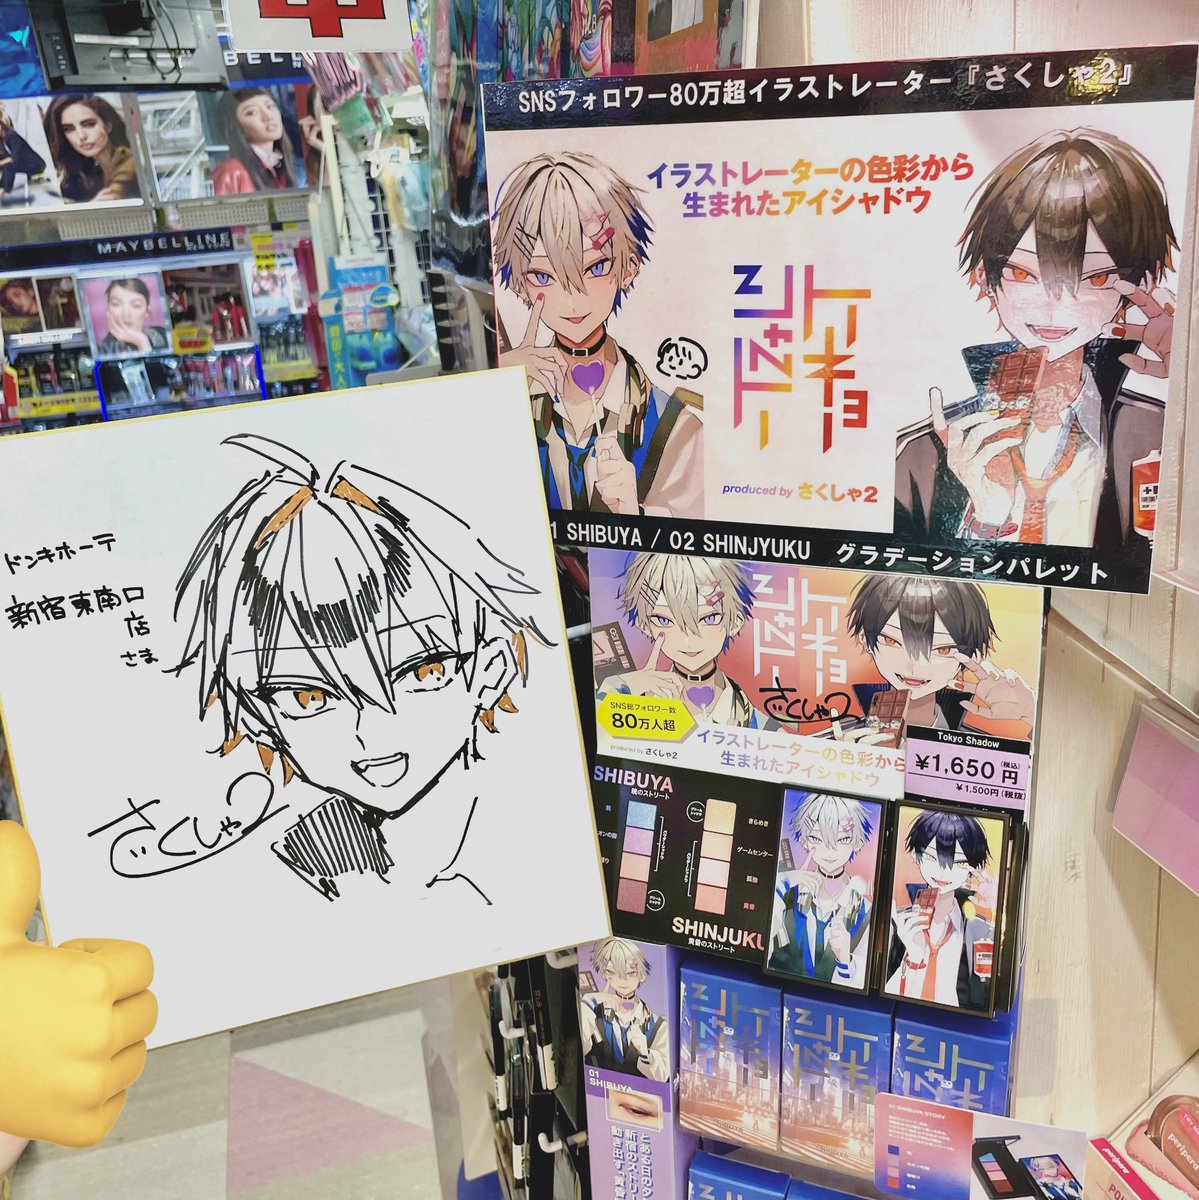 ドンキ新宿東南口店のポップに
サイン入れしました!
色紙も飾ってあるはず 